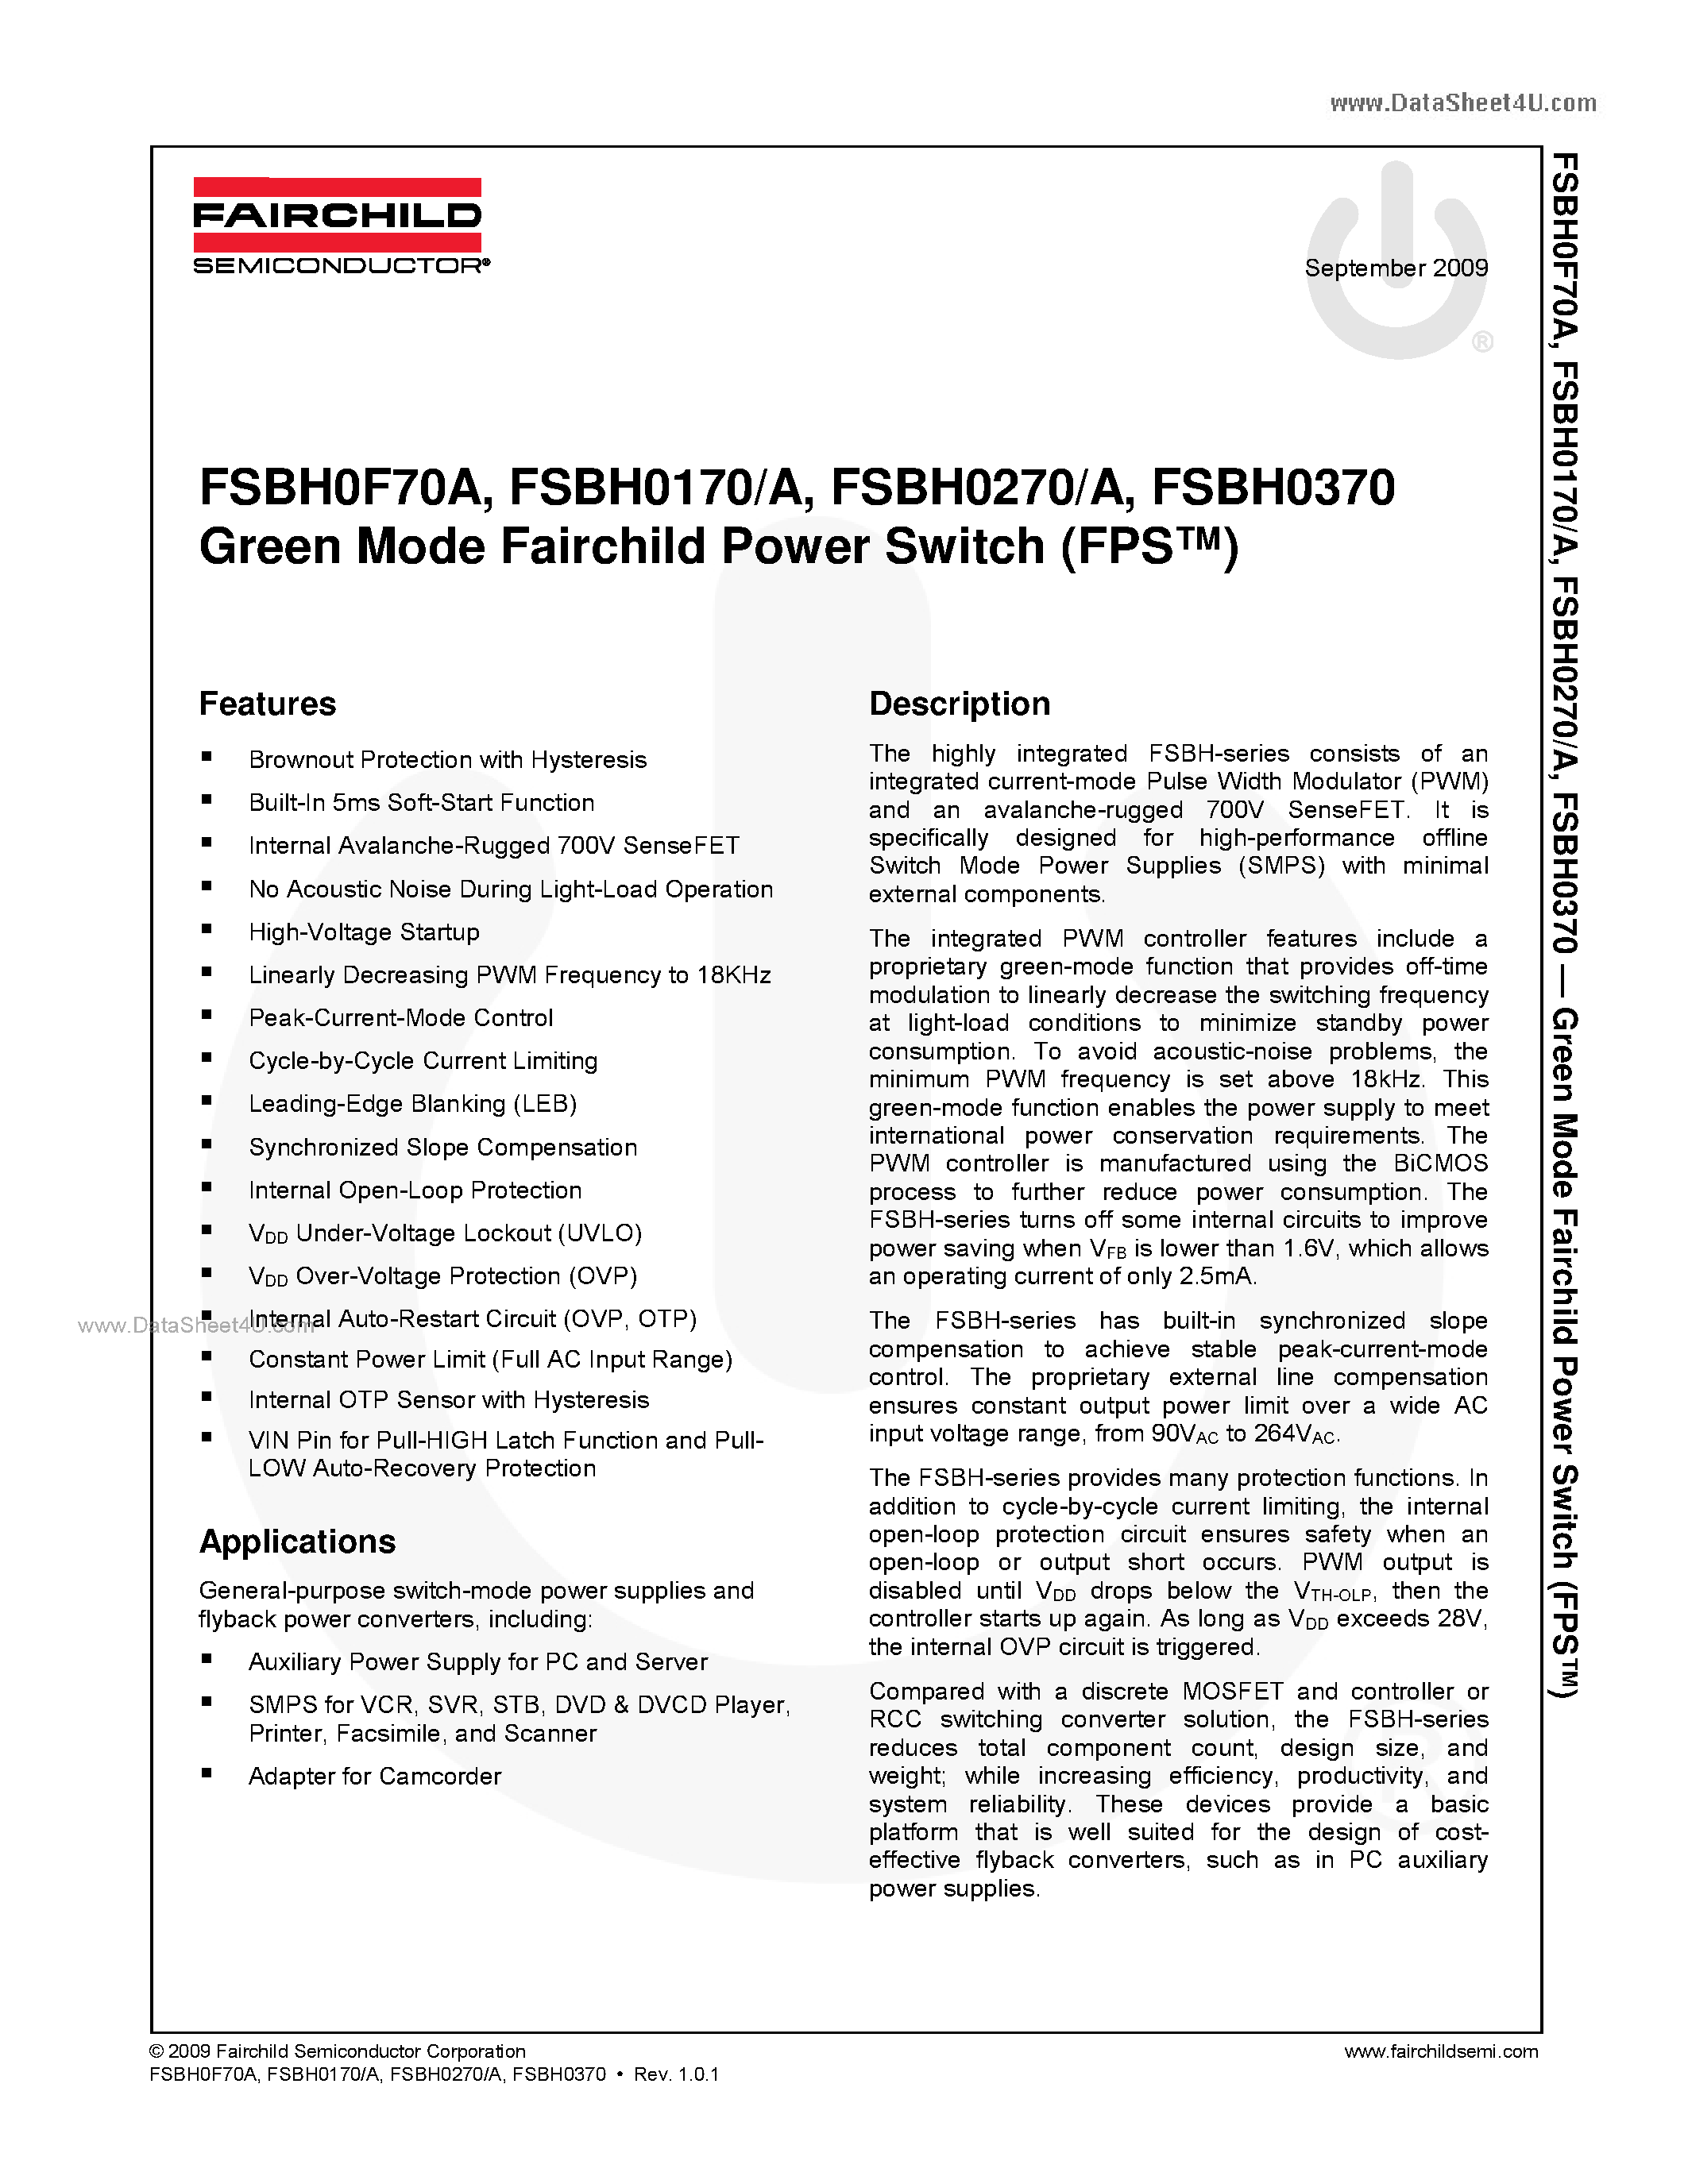 Datasheet FSBH0170 - Green Mode Fairchild Power Switch page 1